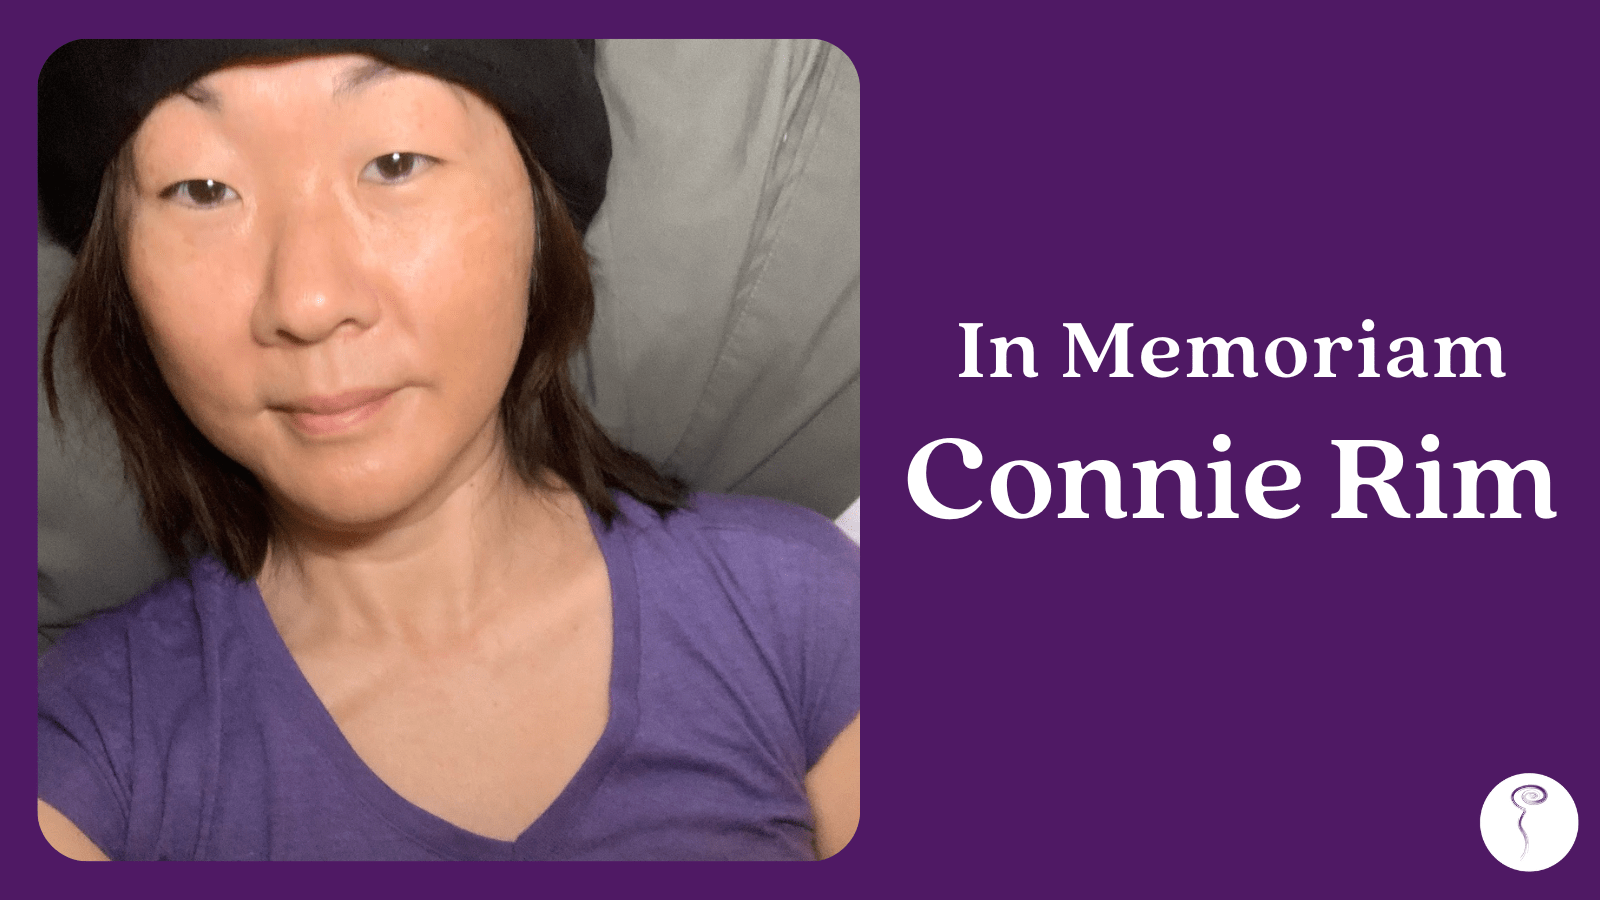 In Memoriam: Connie Rim